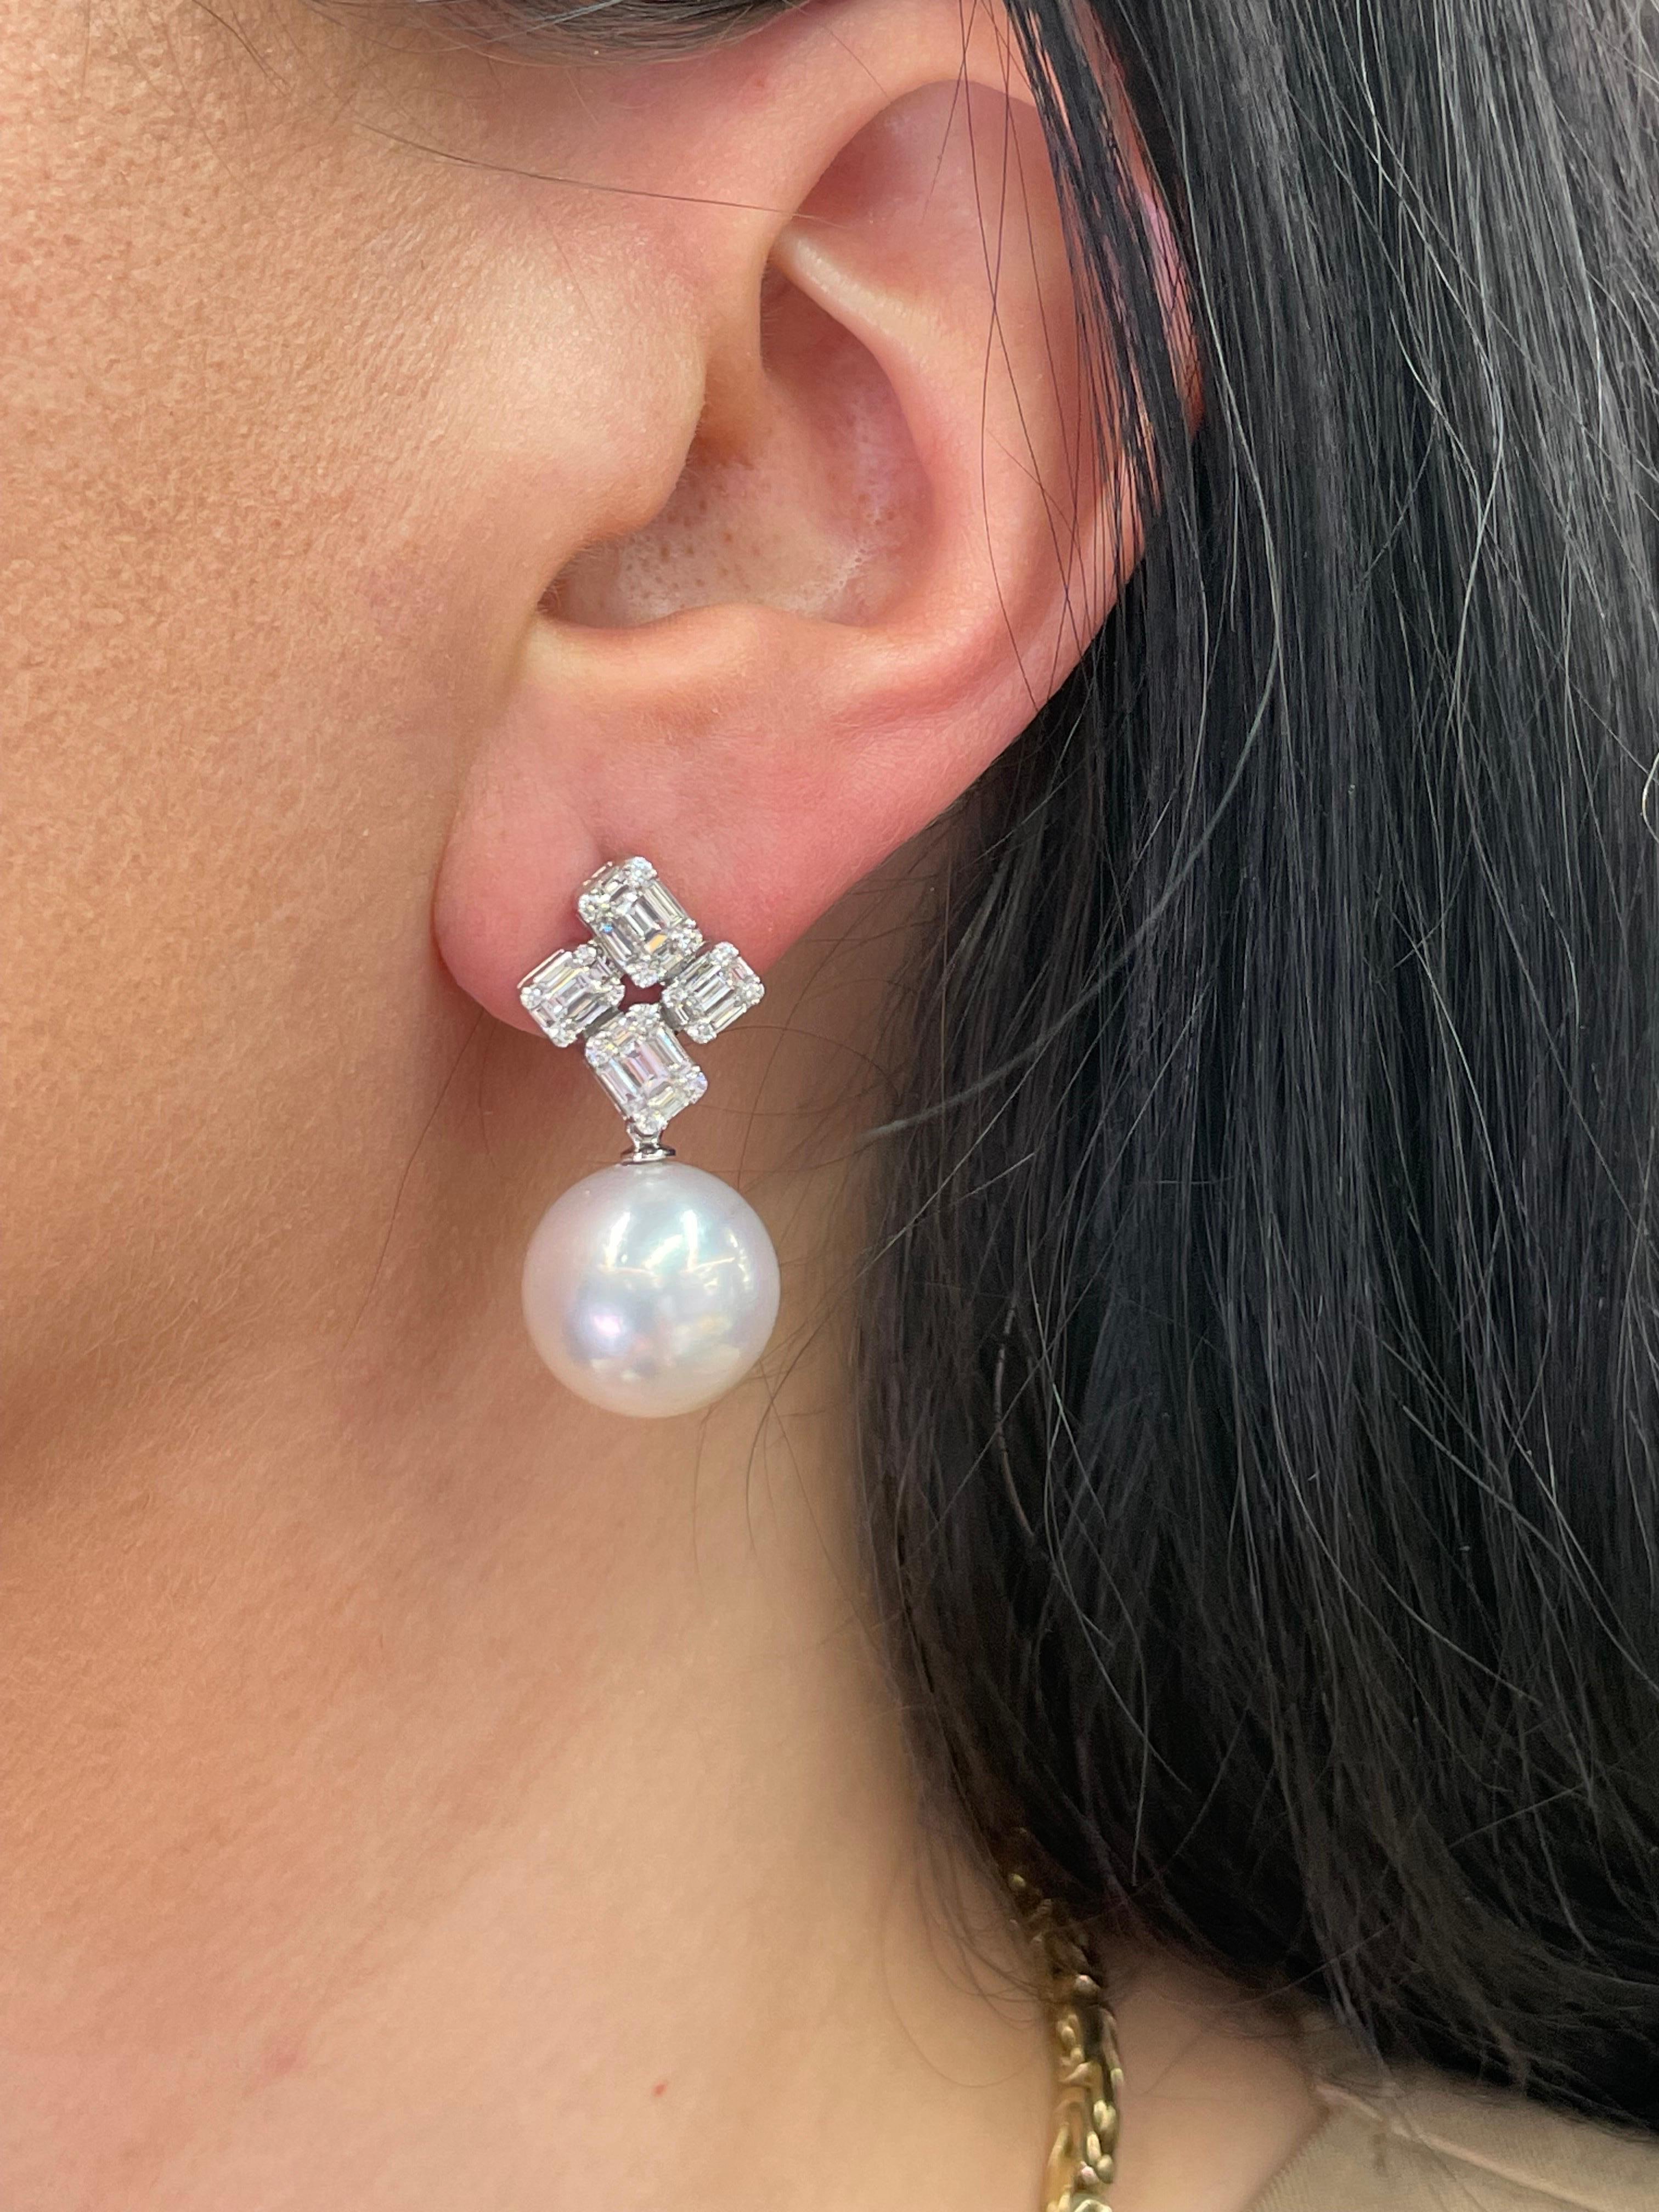 Boucles d'oreilles en or blanc 18 carats comprenant 40 diamants baguettes pesant 1,25 carats et 32 brillants ronds pesant 0,27 carats avec deux perles des mers du Sud mesurant 13-14 MM.

Couleur G-H
Clarity SI

Les perles peuvent être remplacées par